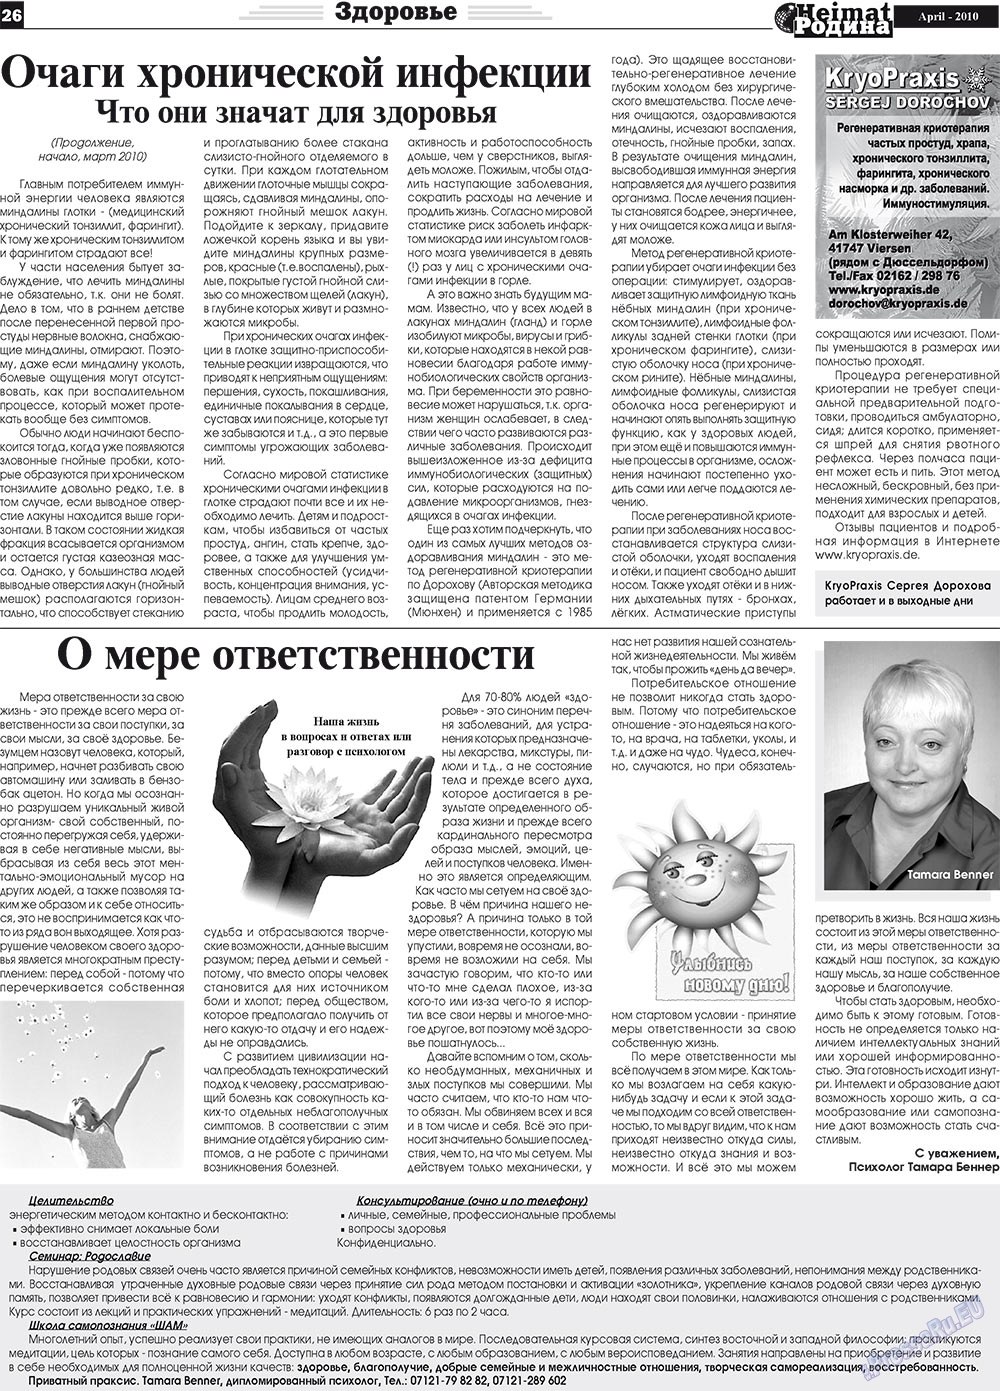 Heimat-Родина (газета). 2010 год, номер 4, стр. 26